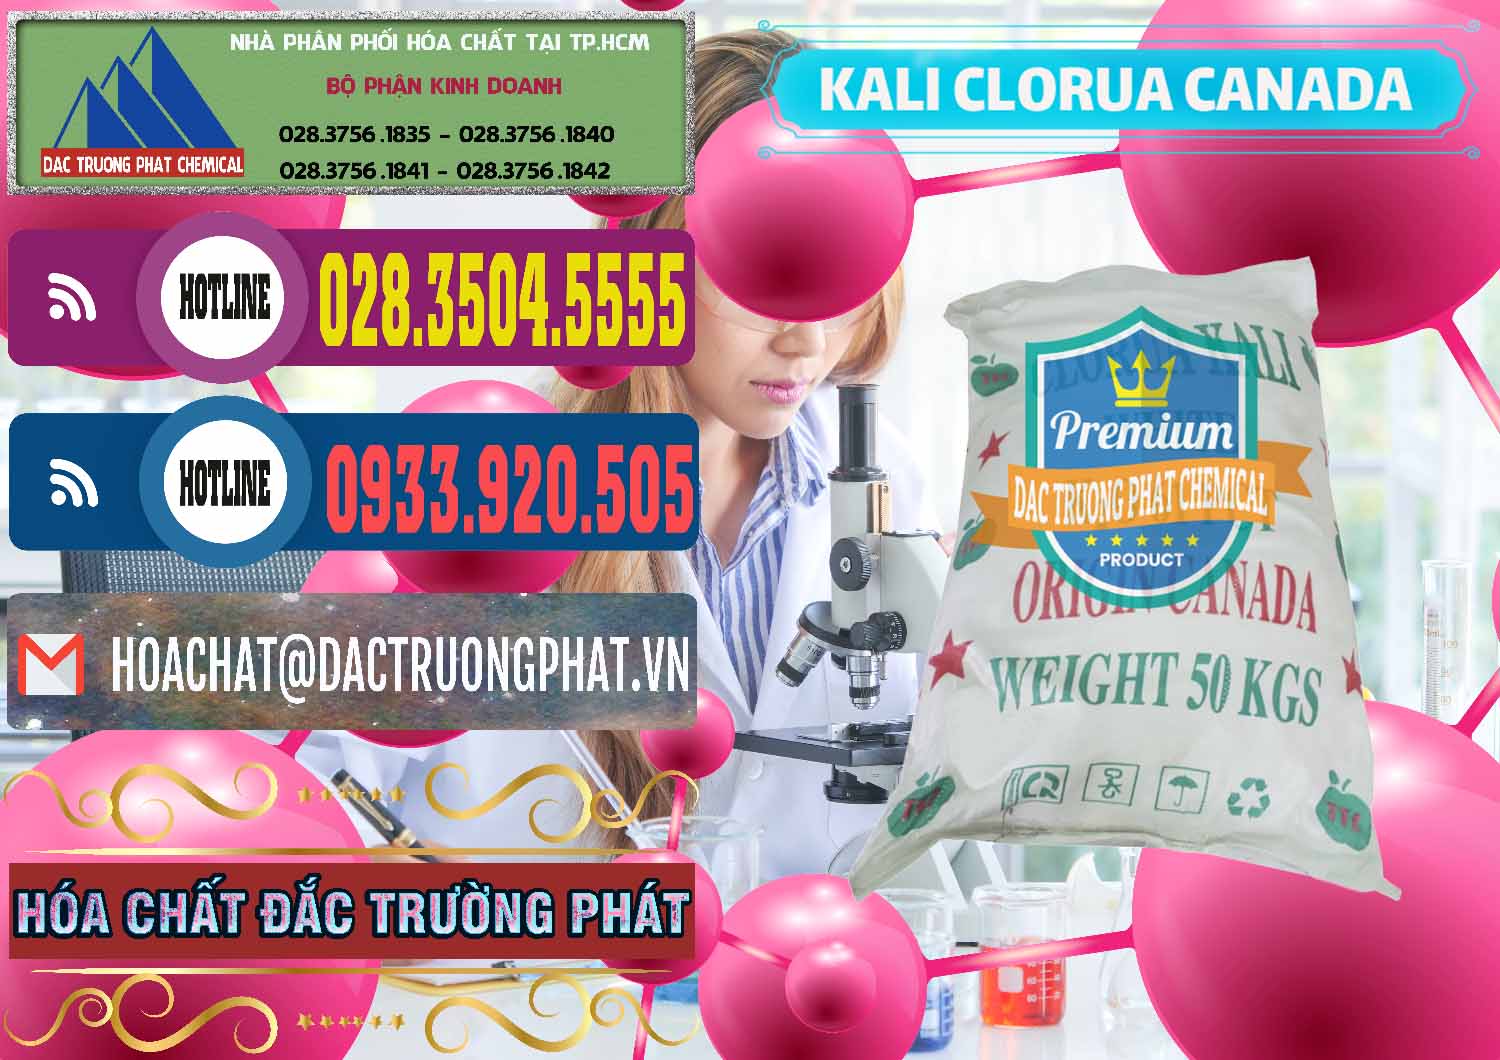 Công ty kinh doanh & bán KCL – Kali Clorua Trắng Canada - 0437 - Công ty chuyên nhập khẩu ( cung cấp ) hóa chất tại TP.HCM - muabanhoachat.com.vn